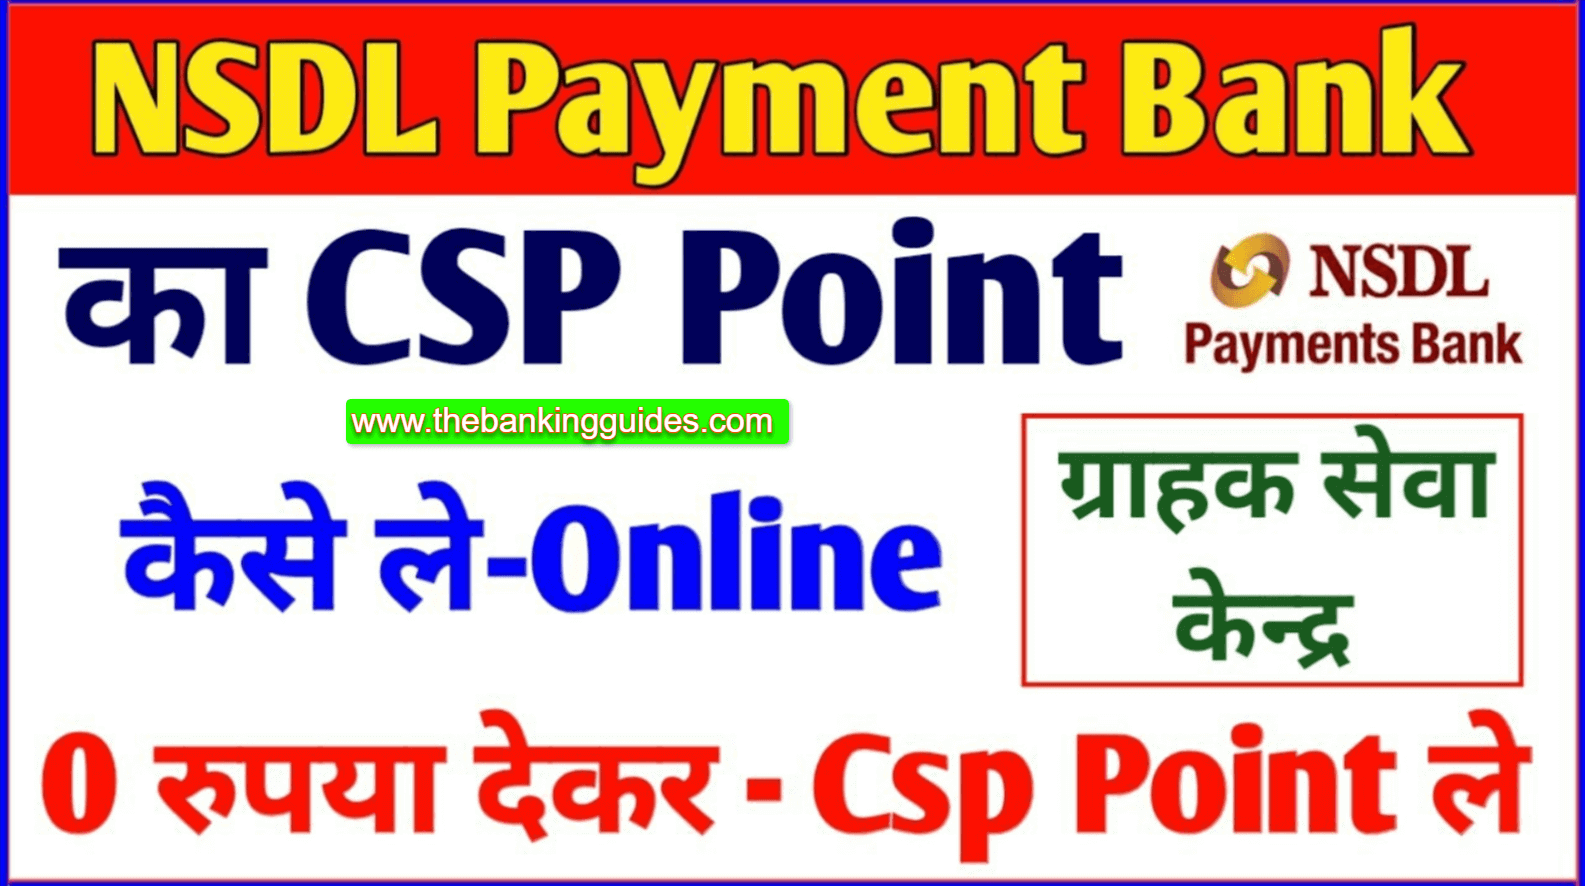 nsdl payment bank csp